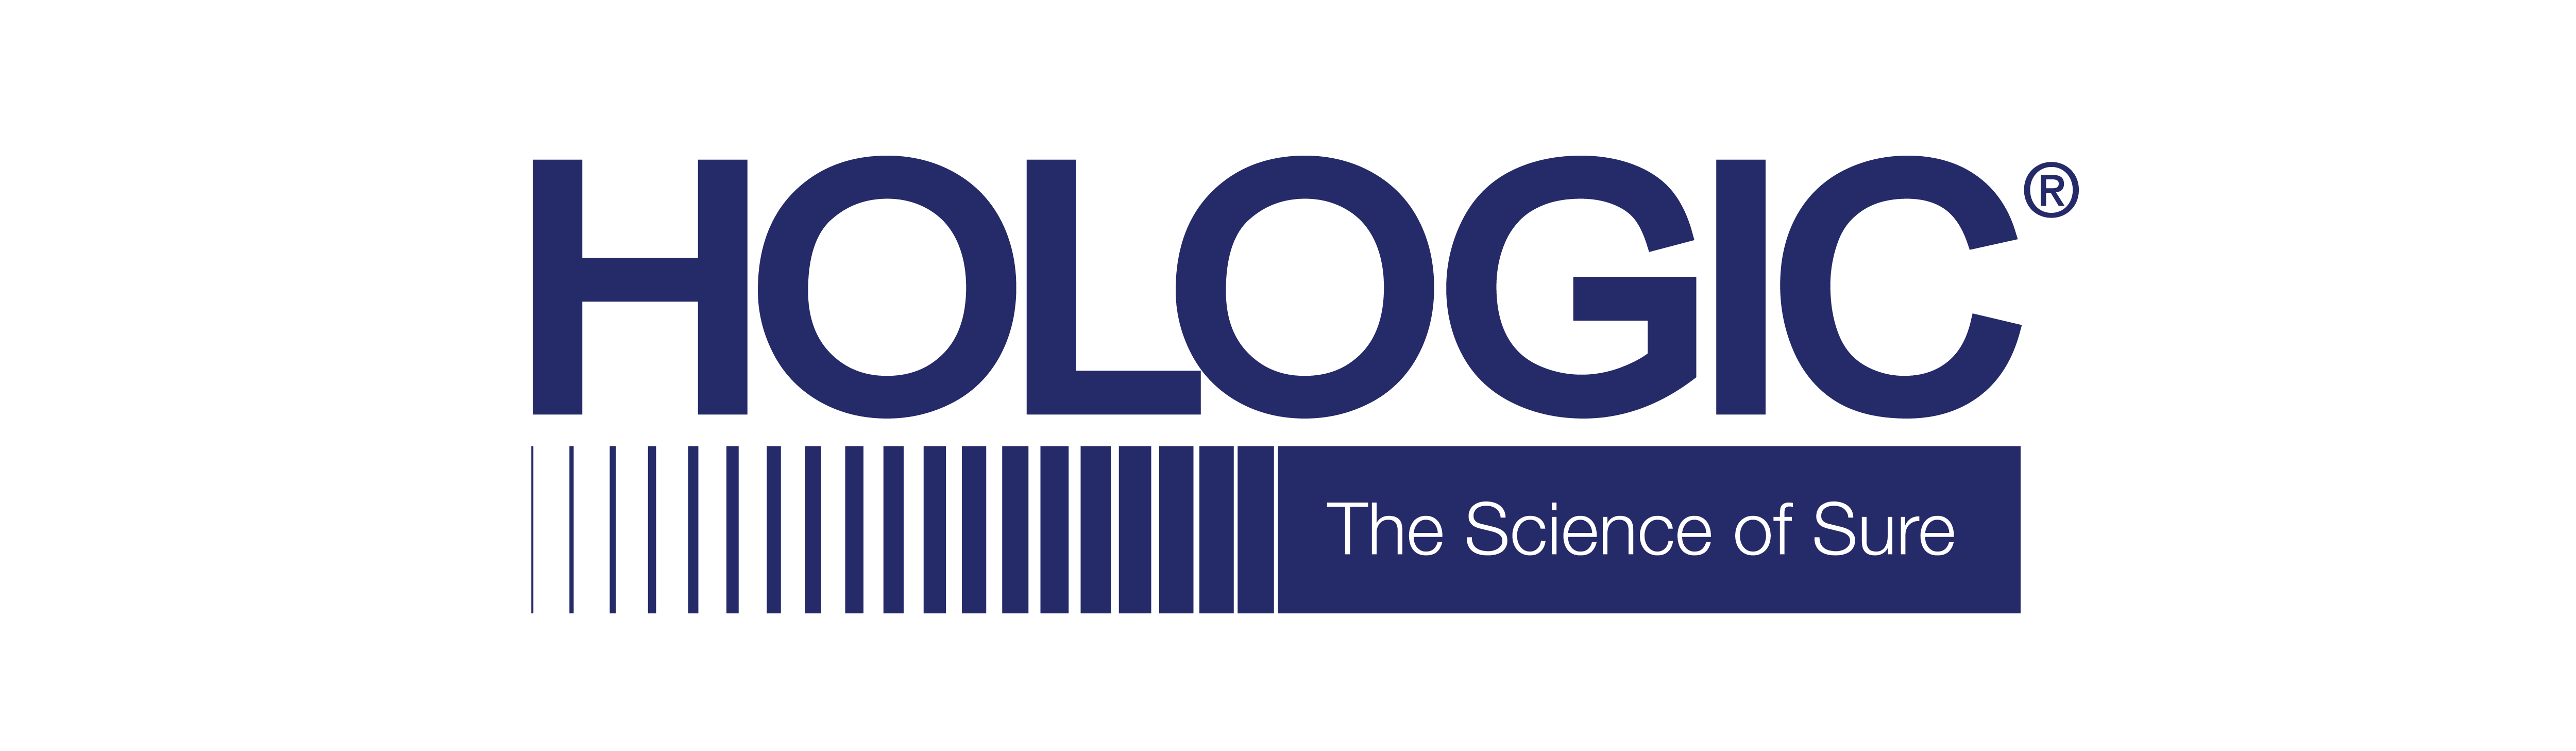 hologic_logo